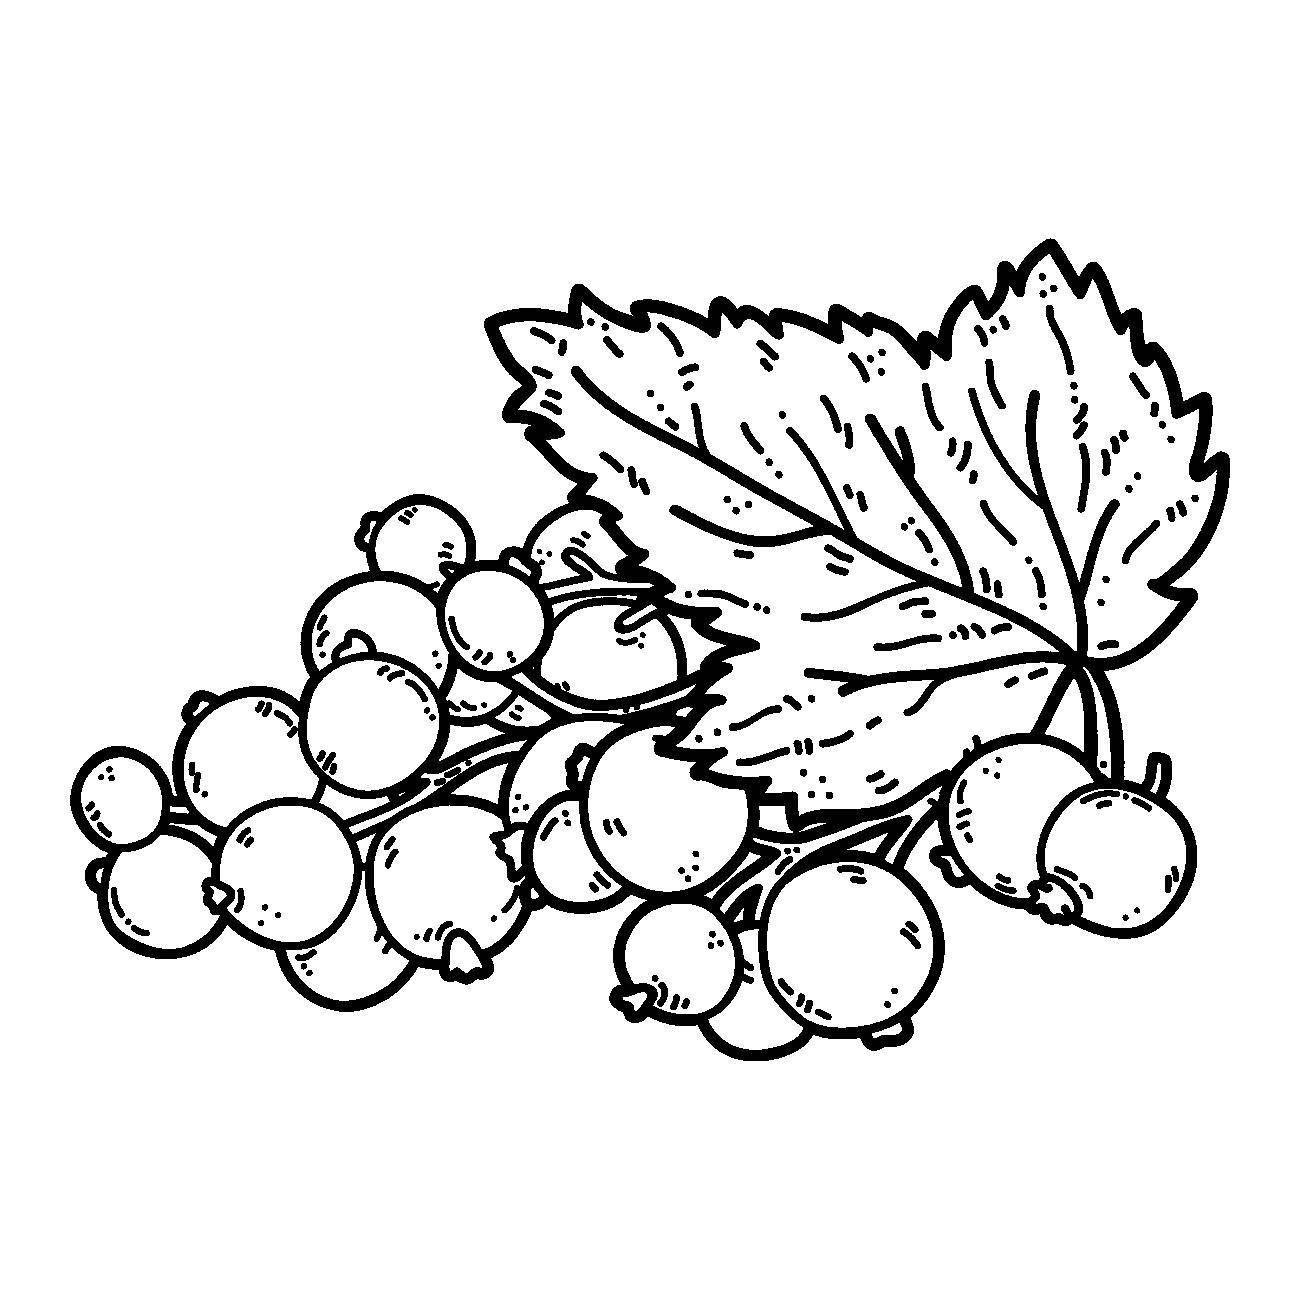 Раскраски ягоды малина вишня арбуз вишня крыжовник  Рисунок смородина